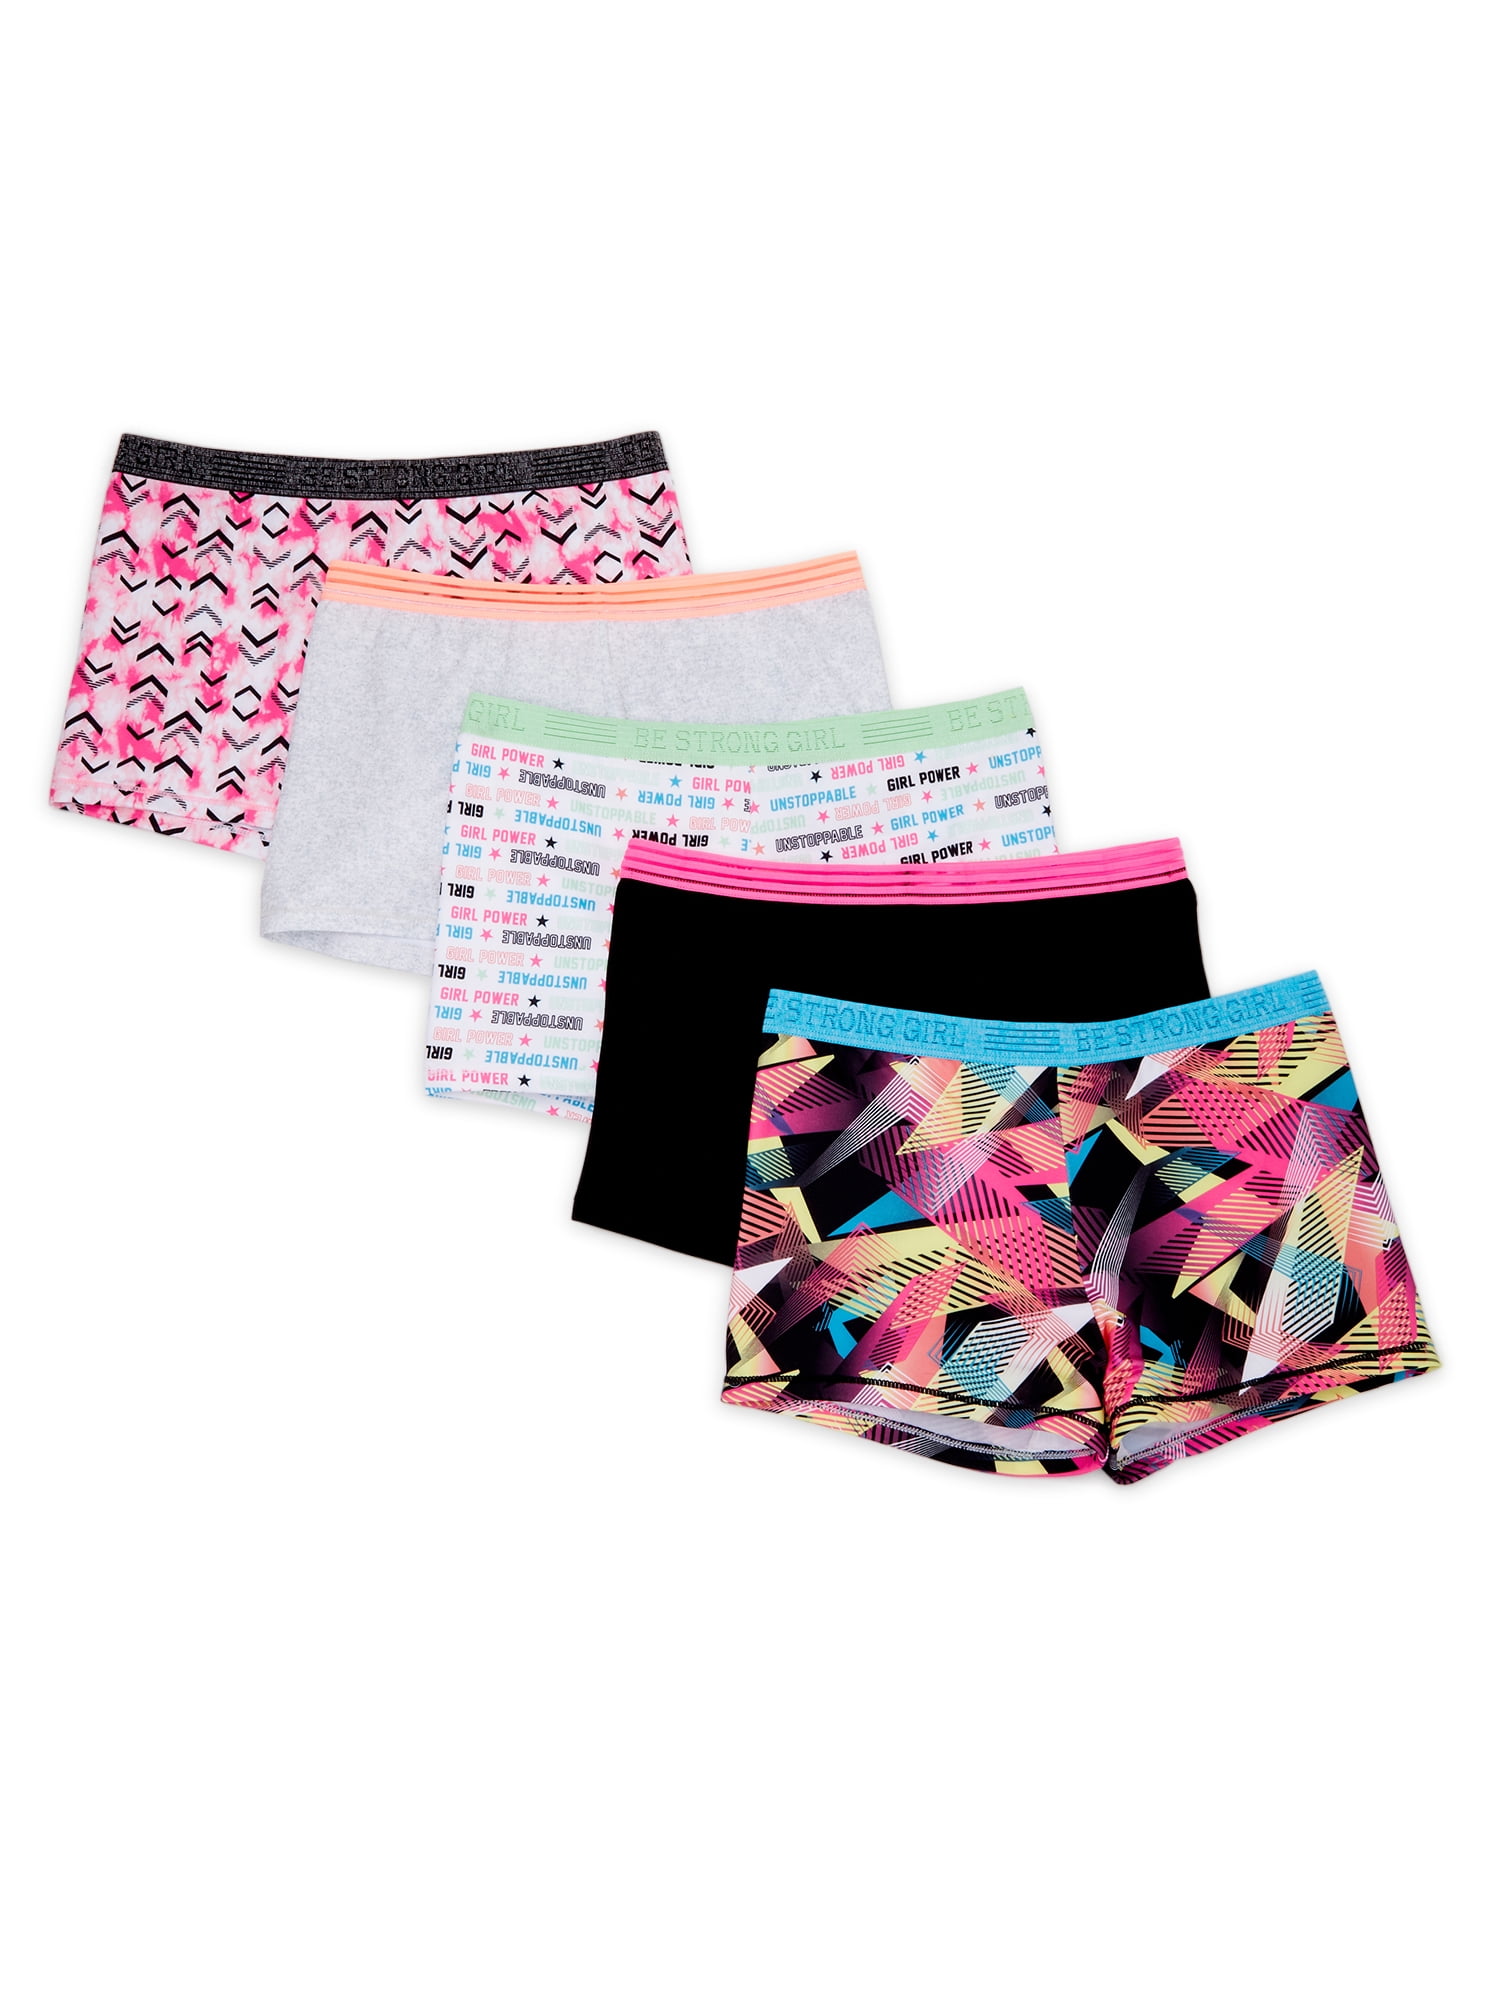 Athletic Works Girls' Active Boyshorts Underwear, 5 Pack, Sizes 4